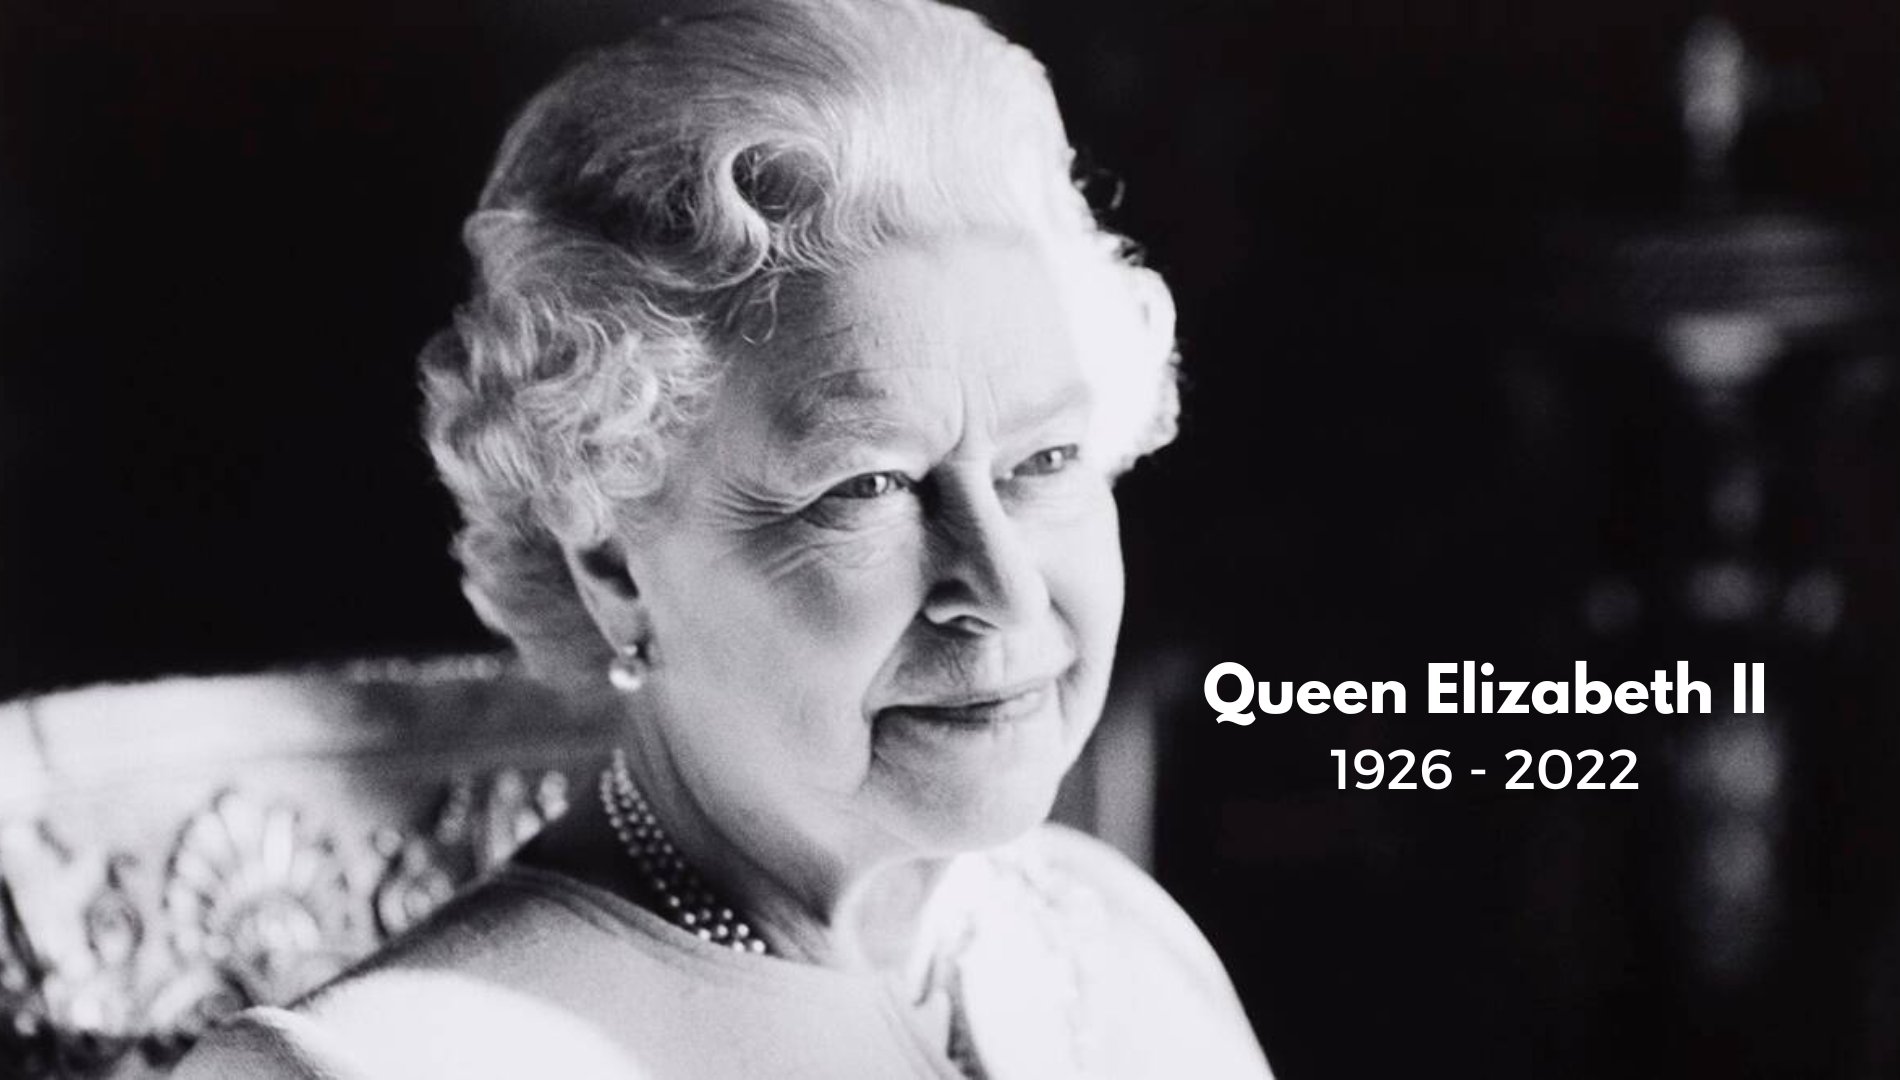 HM Queen Elizabeth II|